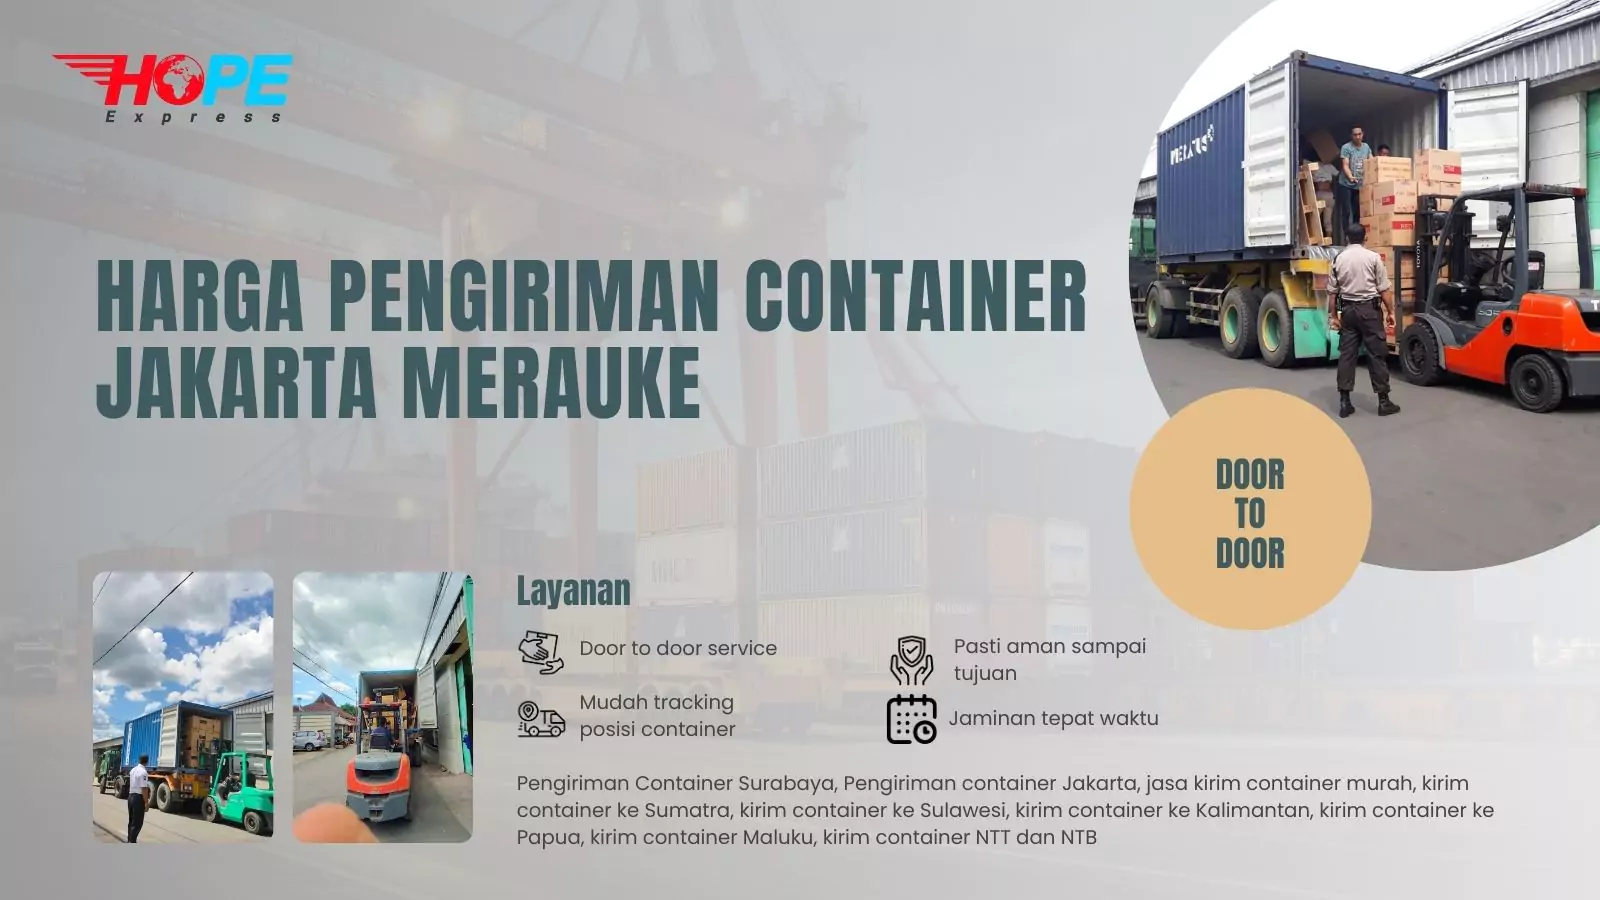 Harga Pengiriman Container Jakarta Merauke